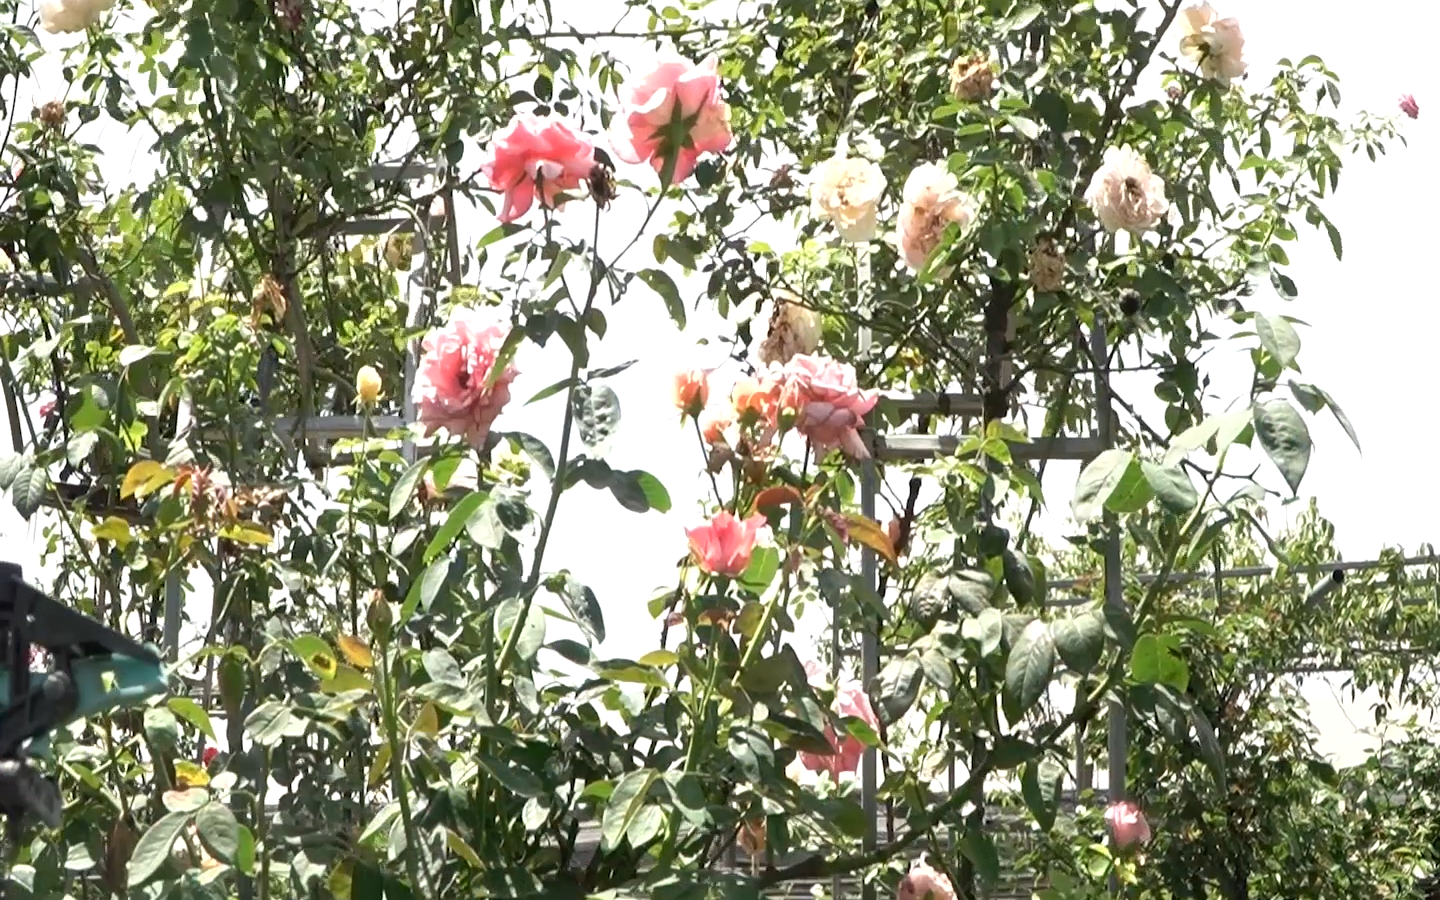 Video: Nông dân 9X mách bí kíp bắt bệnh cho hoa hồng “đỏng đảnh”